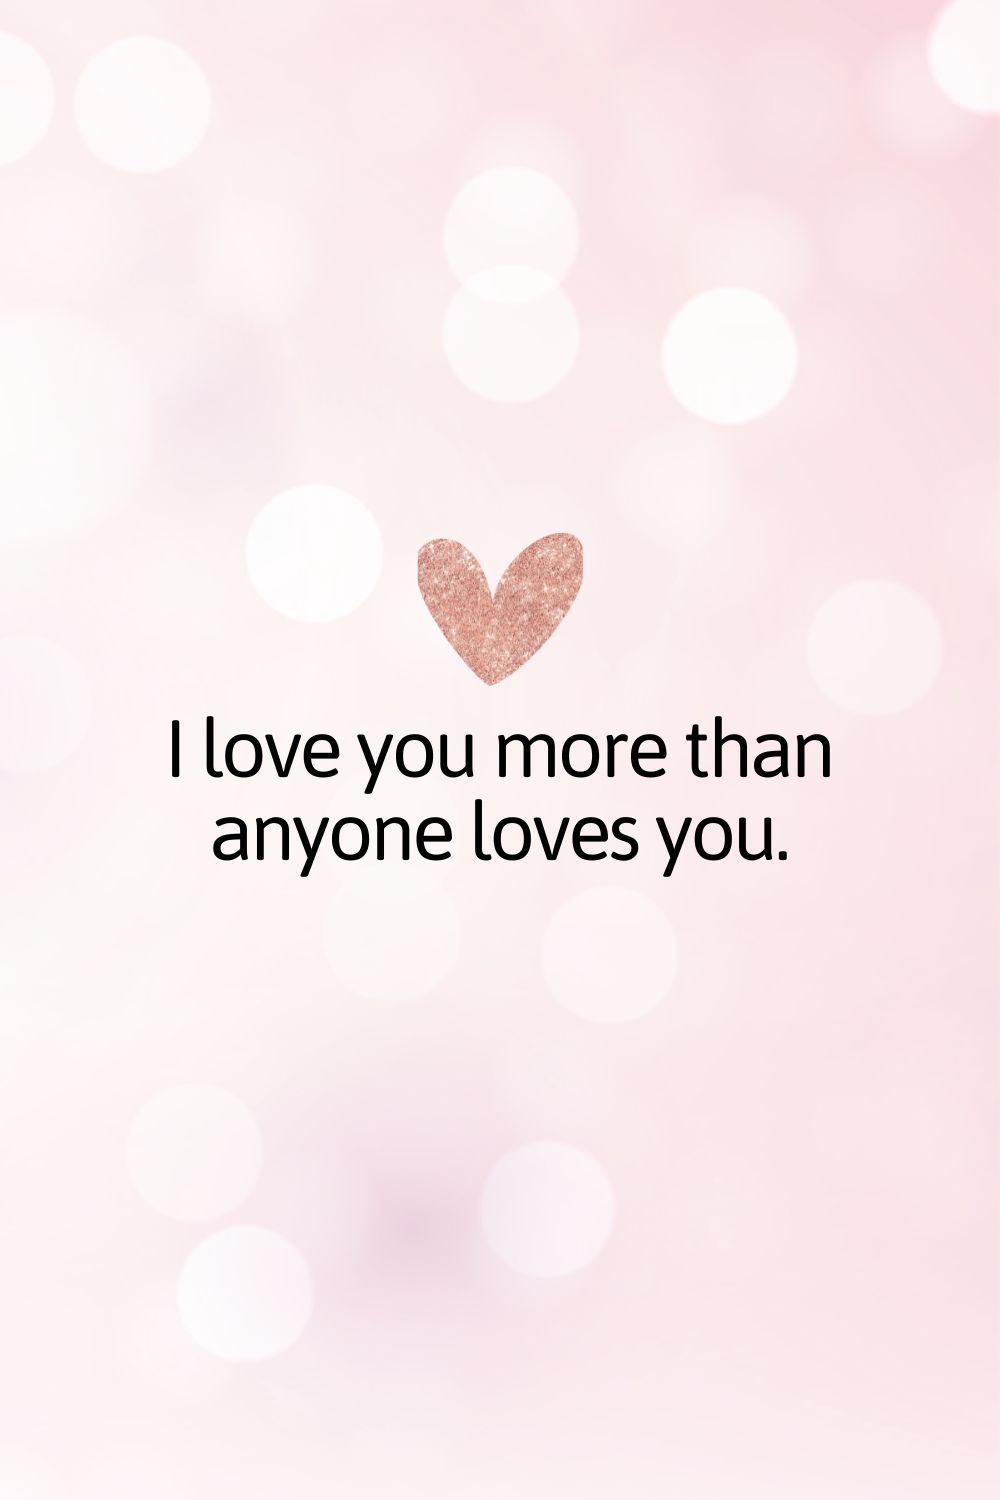 Te quiero más de lo que nadie te quiere